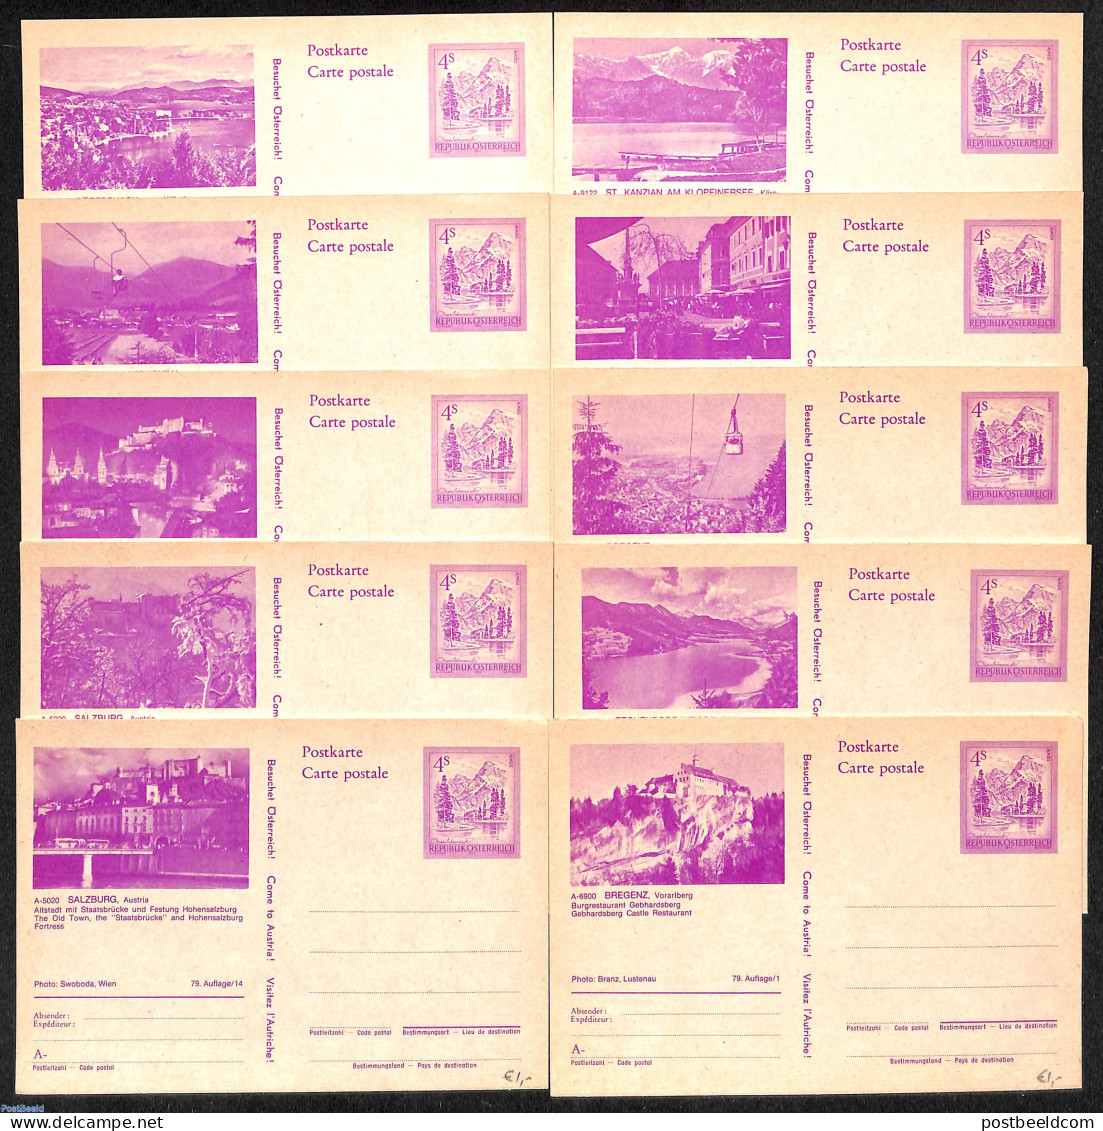 Austria 1978 10 Illustrated Postcards, Unused Postal Stationary - Briefe U. Dokumente